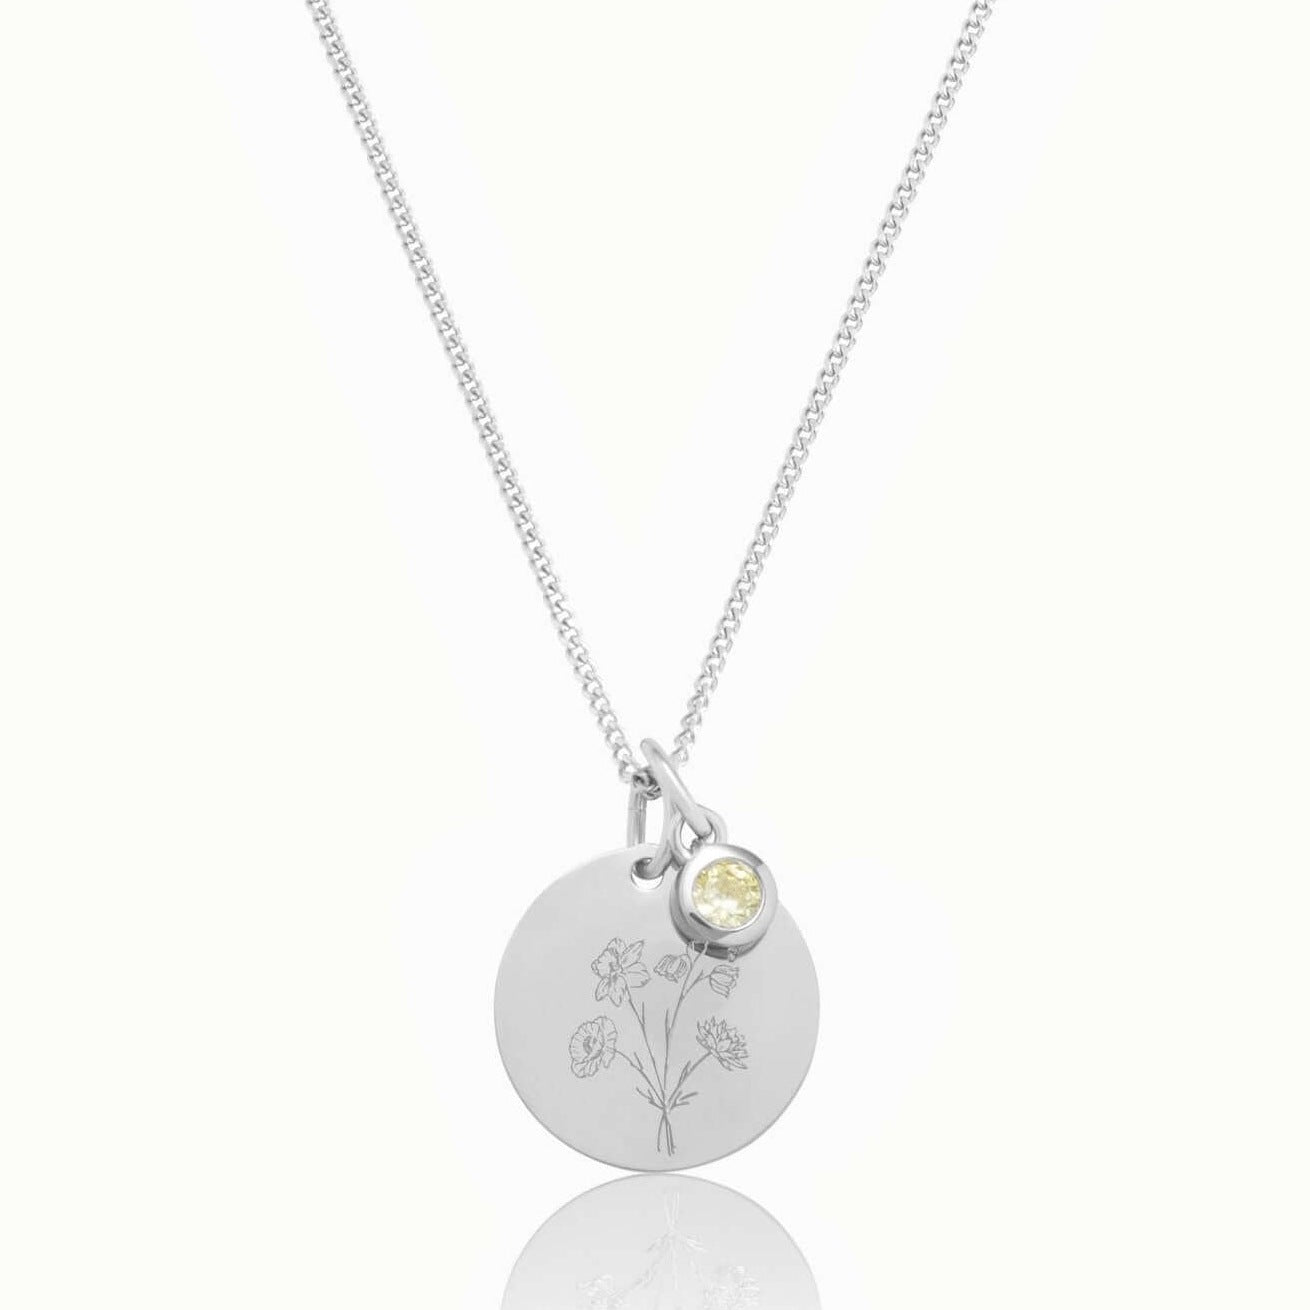 Personalisierte Halskette in 925 Sterlingsilber mit Geburtsblumenstrauß, Gravur und Geburtsstein. Das perfekte Geschenk für Mütter von „Emma & Marie“